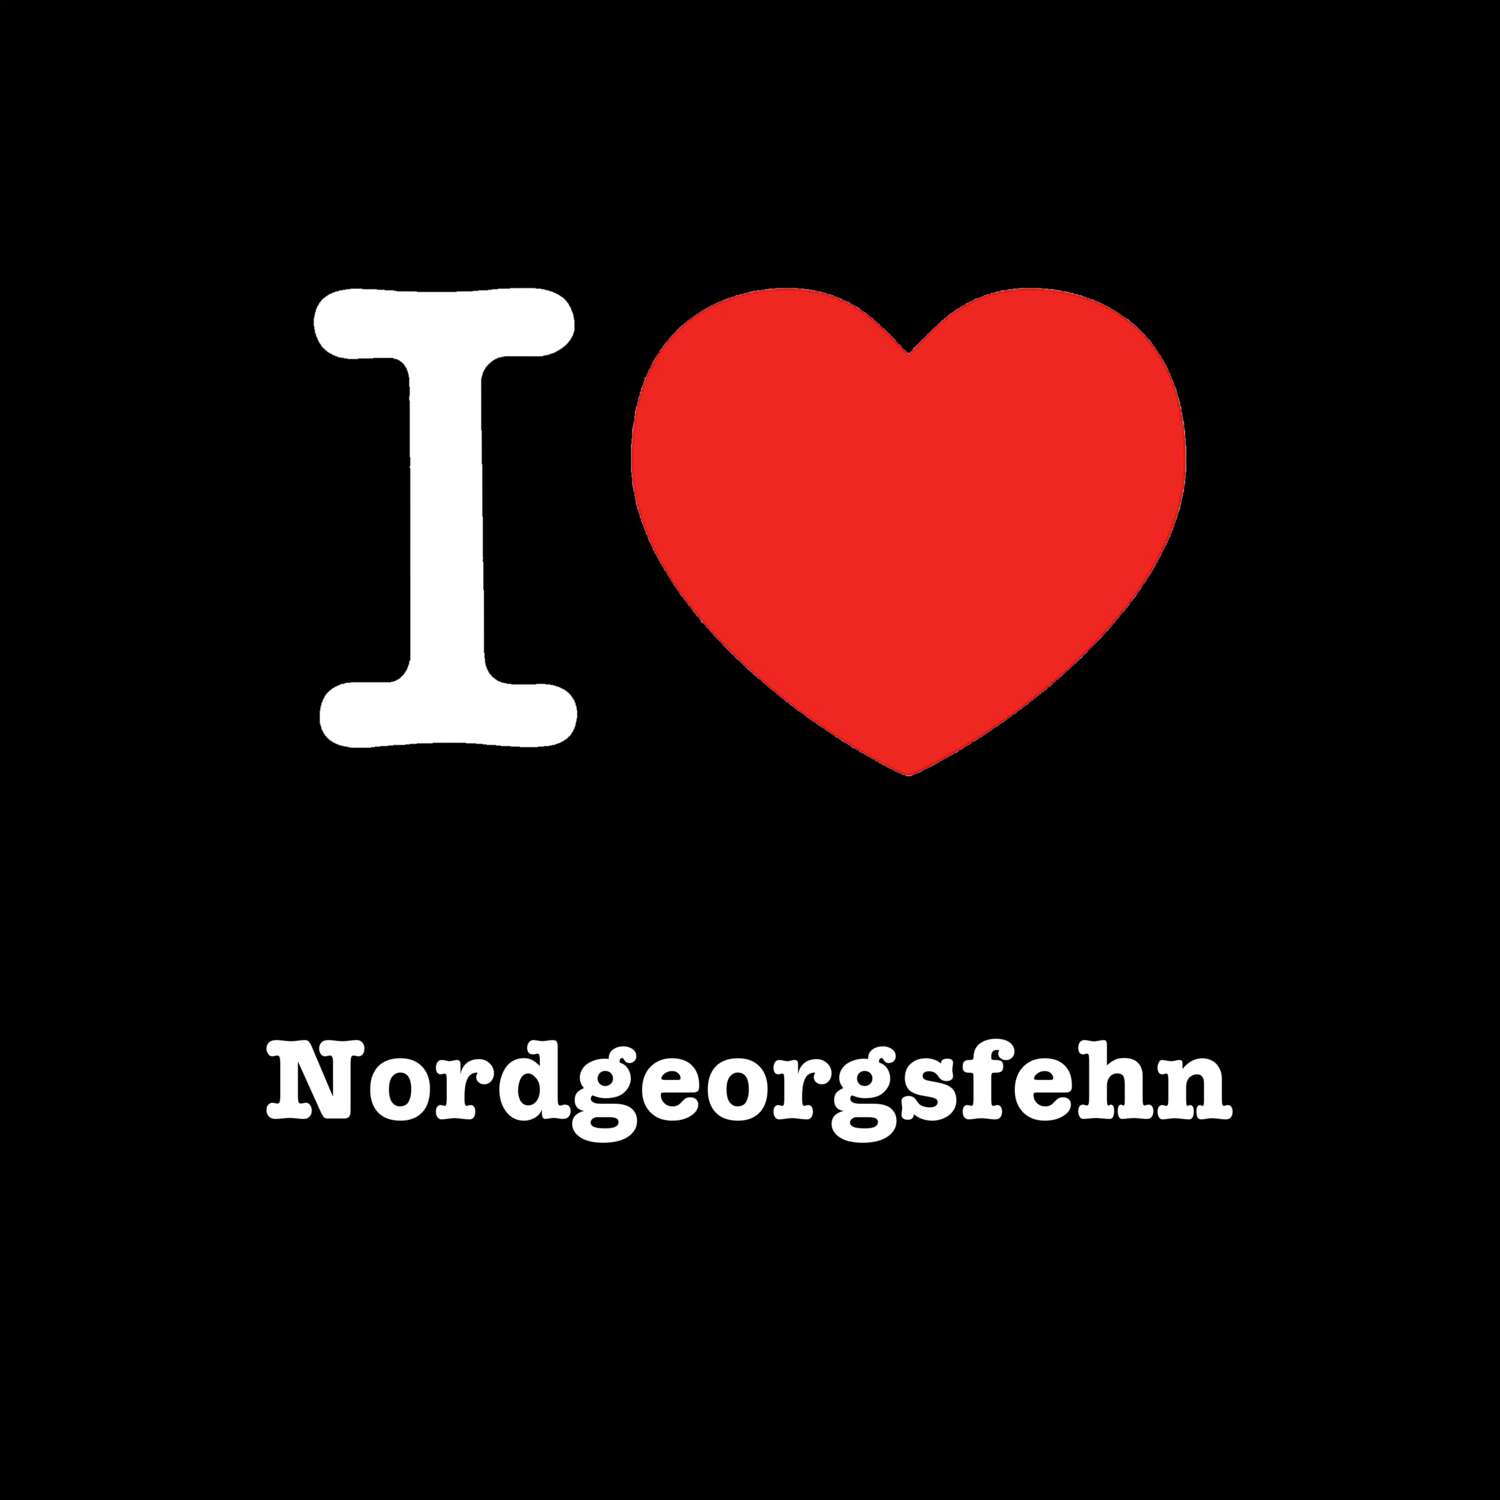 Nordgeorgsfehn T-Shirt »I love«